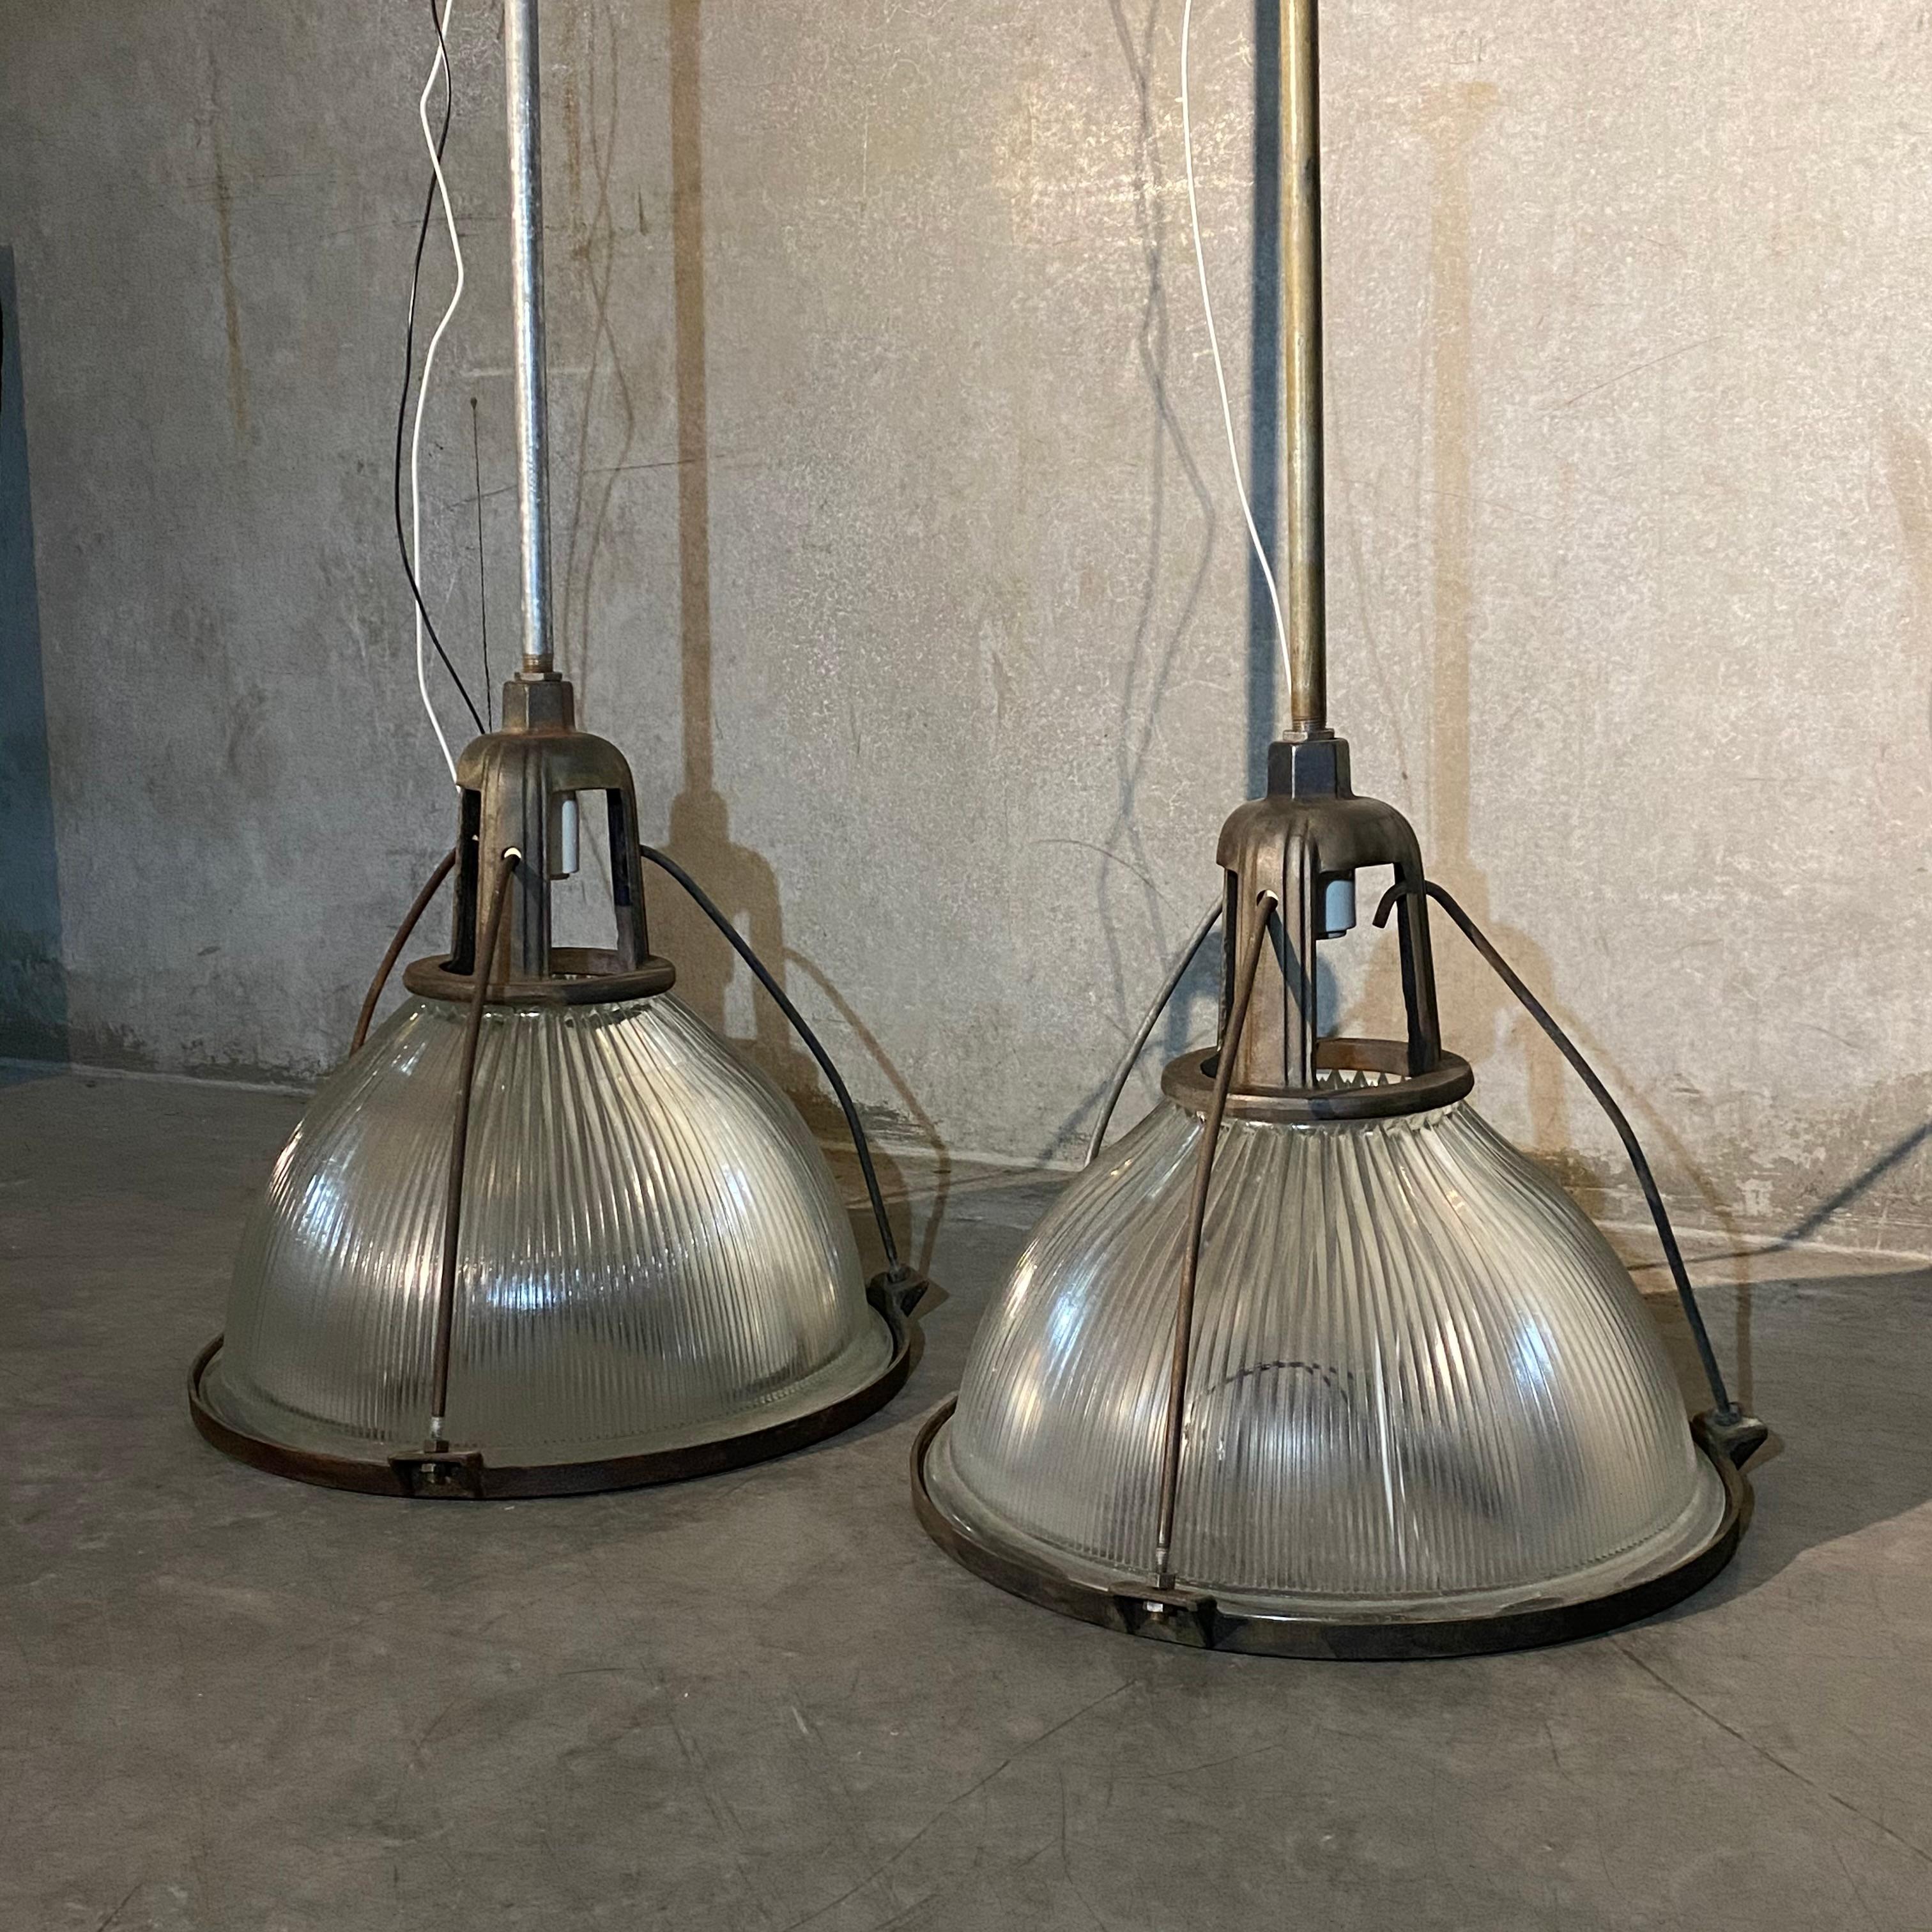 Un groupe rare de trois grandes lampes Holophane, avec des raccords coulés de la première génération, des verres striés et extra-larges, il n'y en a pas beaucoup.

prix par lumière ...

Recâblage sur le tuyau avec possibilité de déterminer